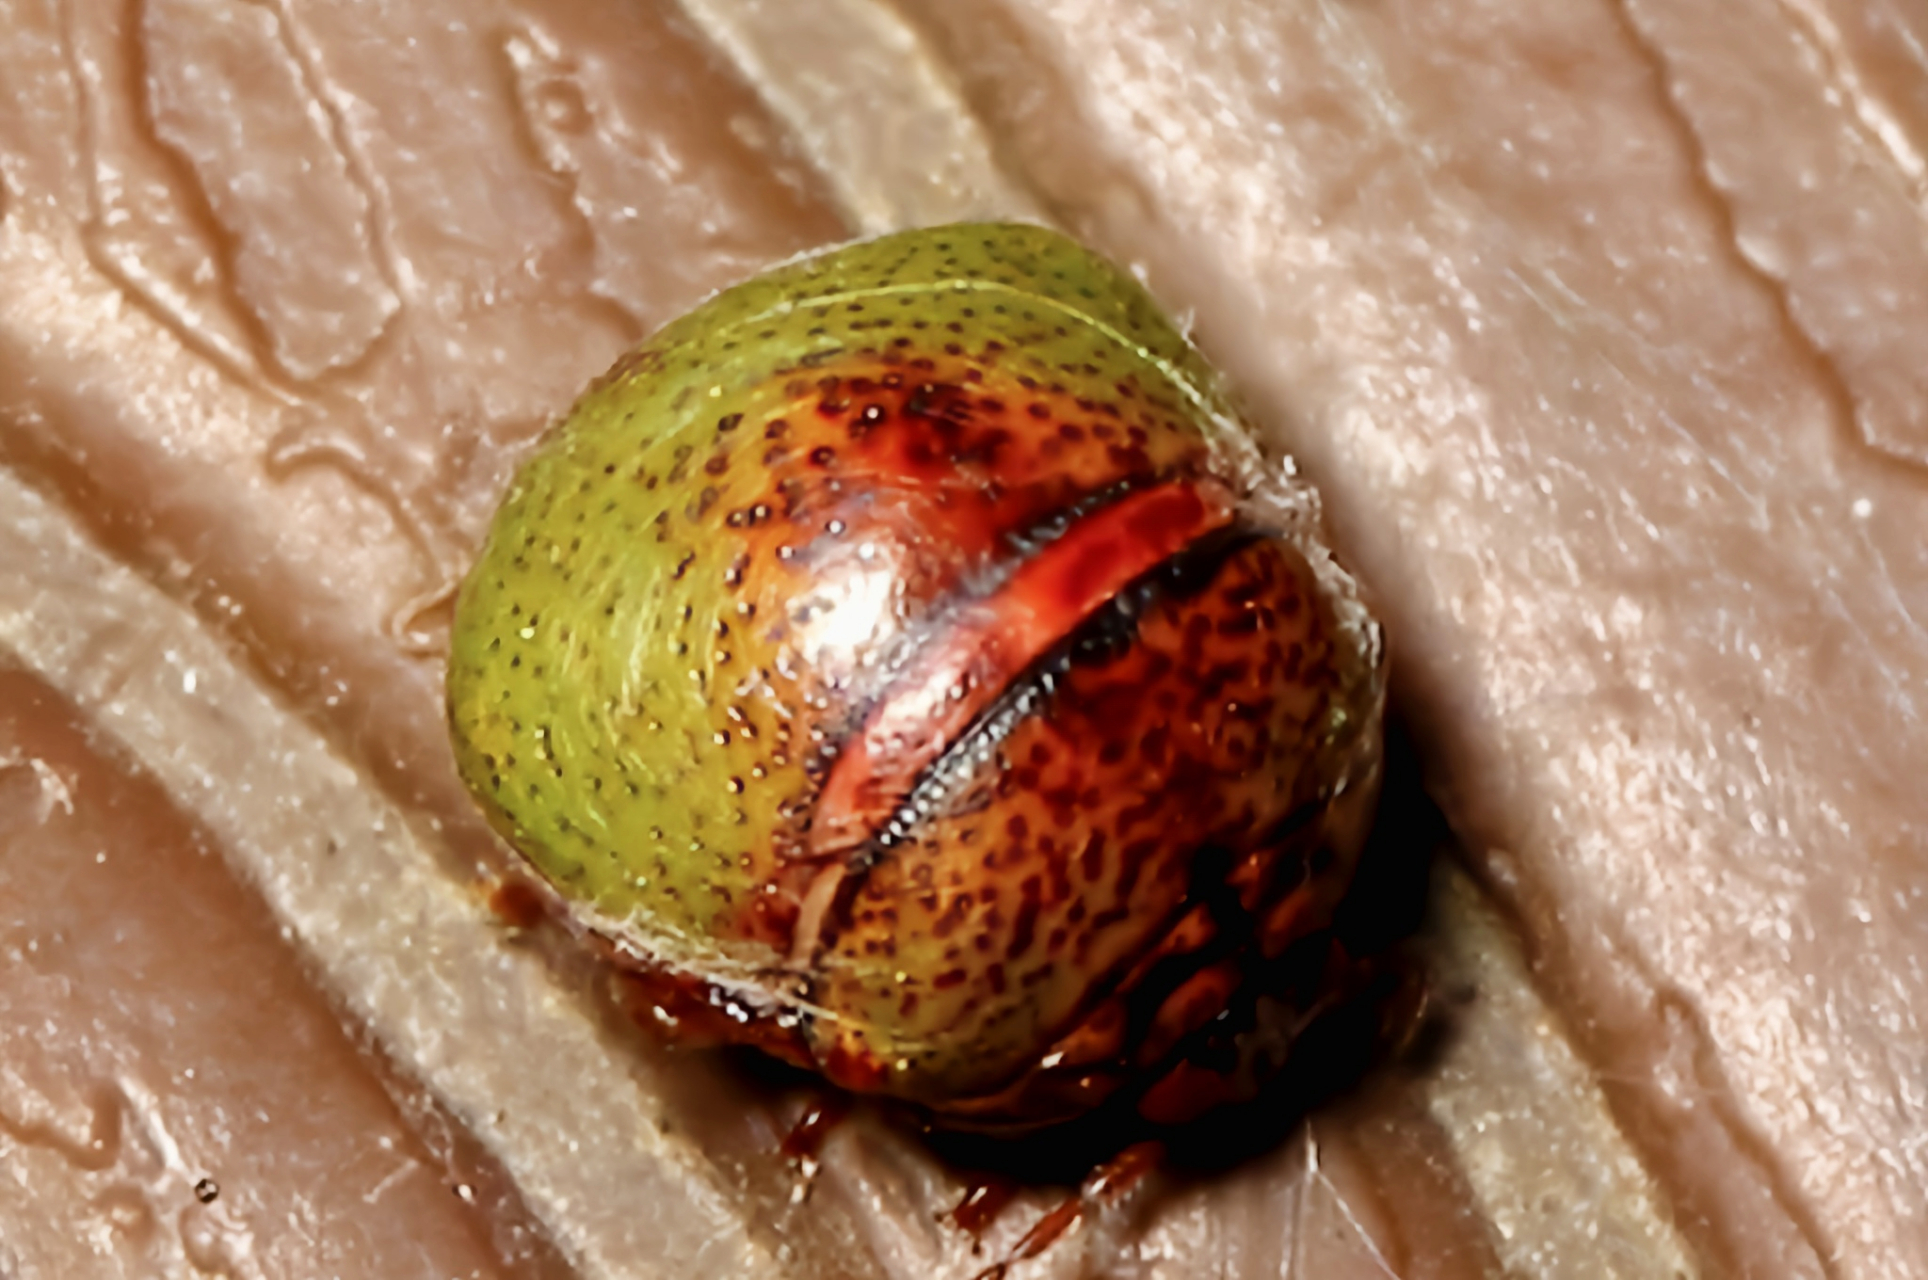 圆蝽科昆虫多数危害各种农物作物,尤其